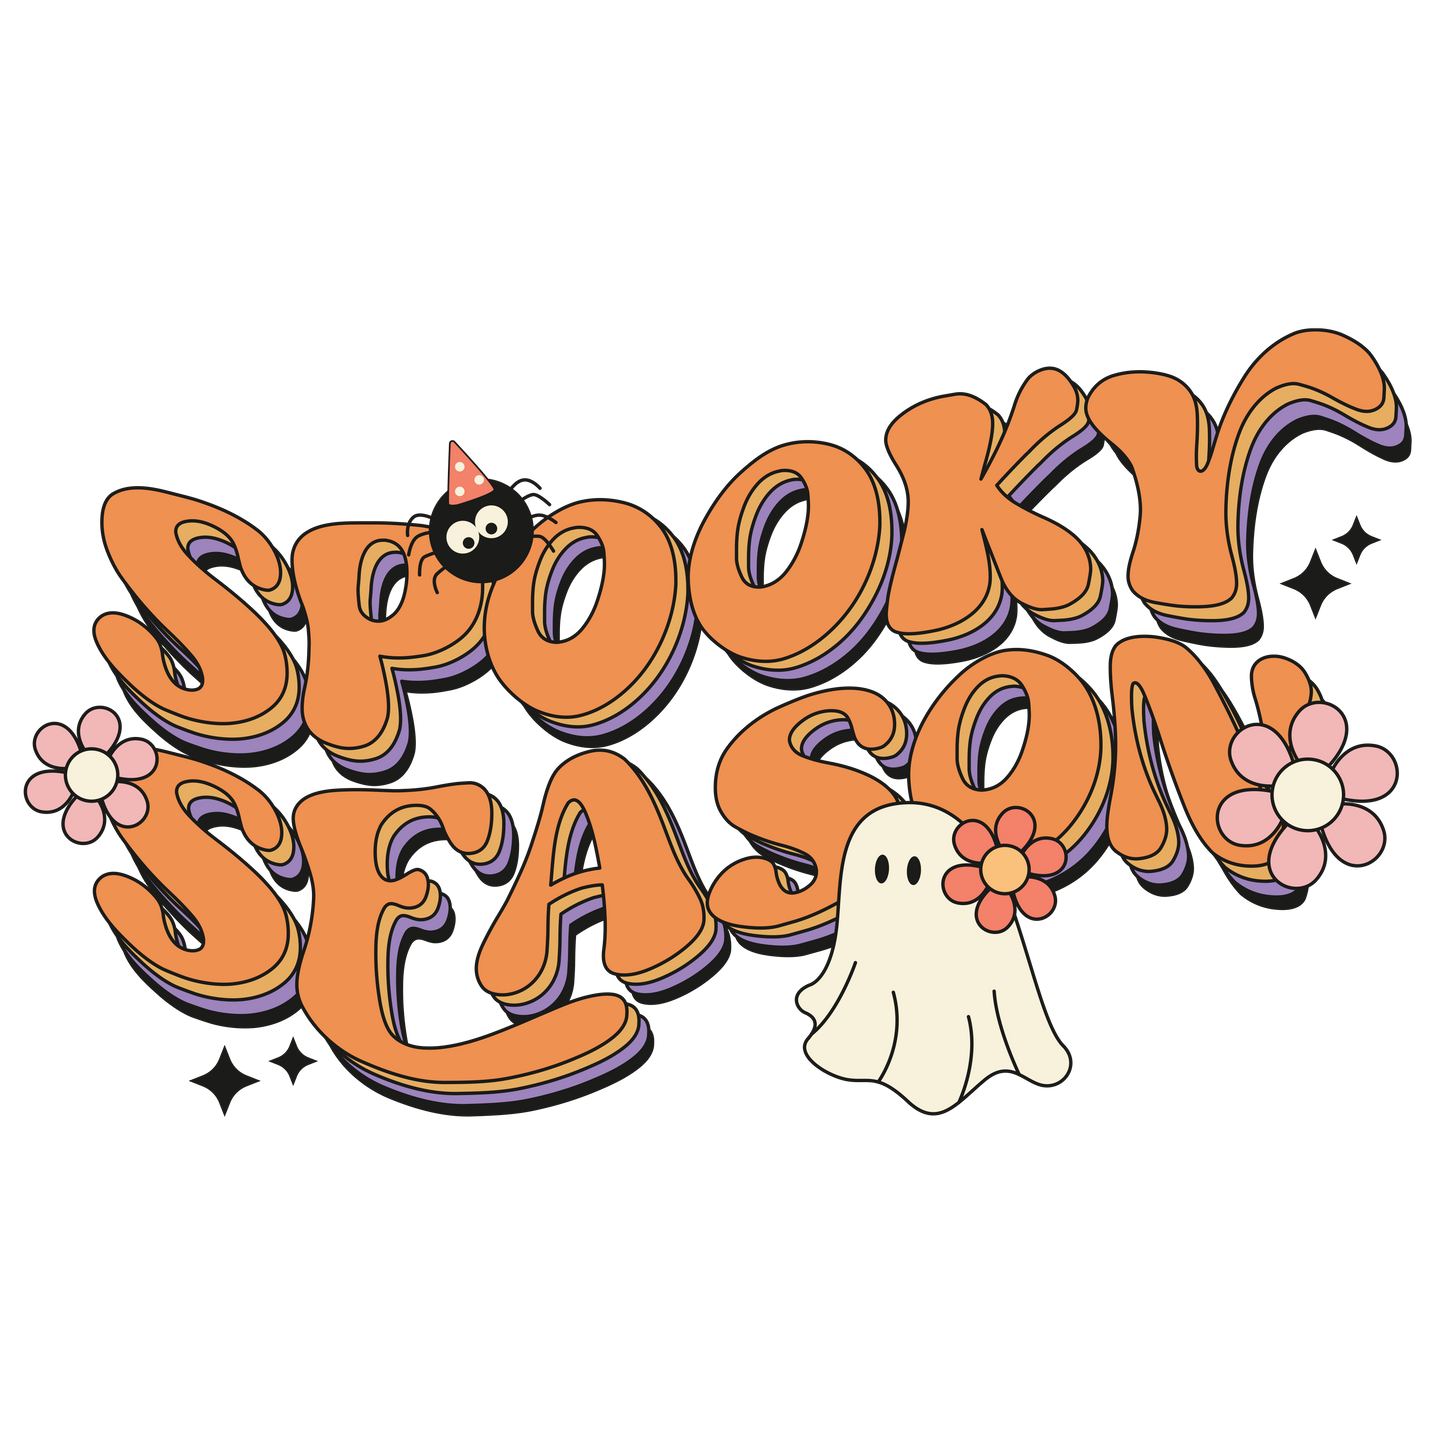 Spooky Season Halloween DTF